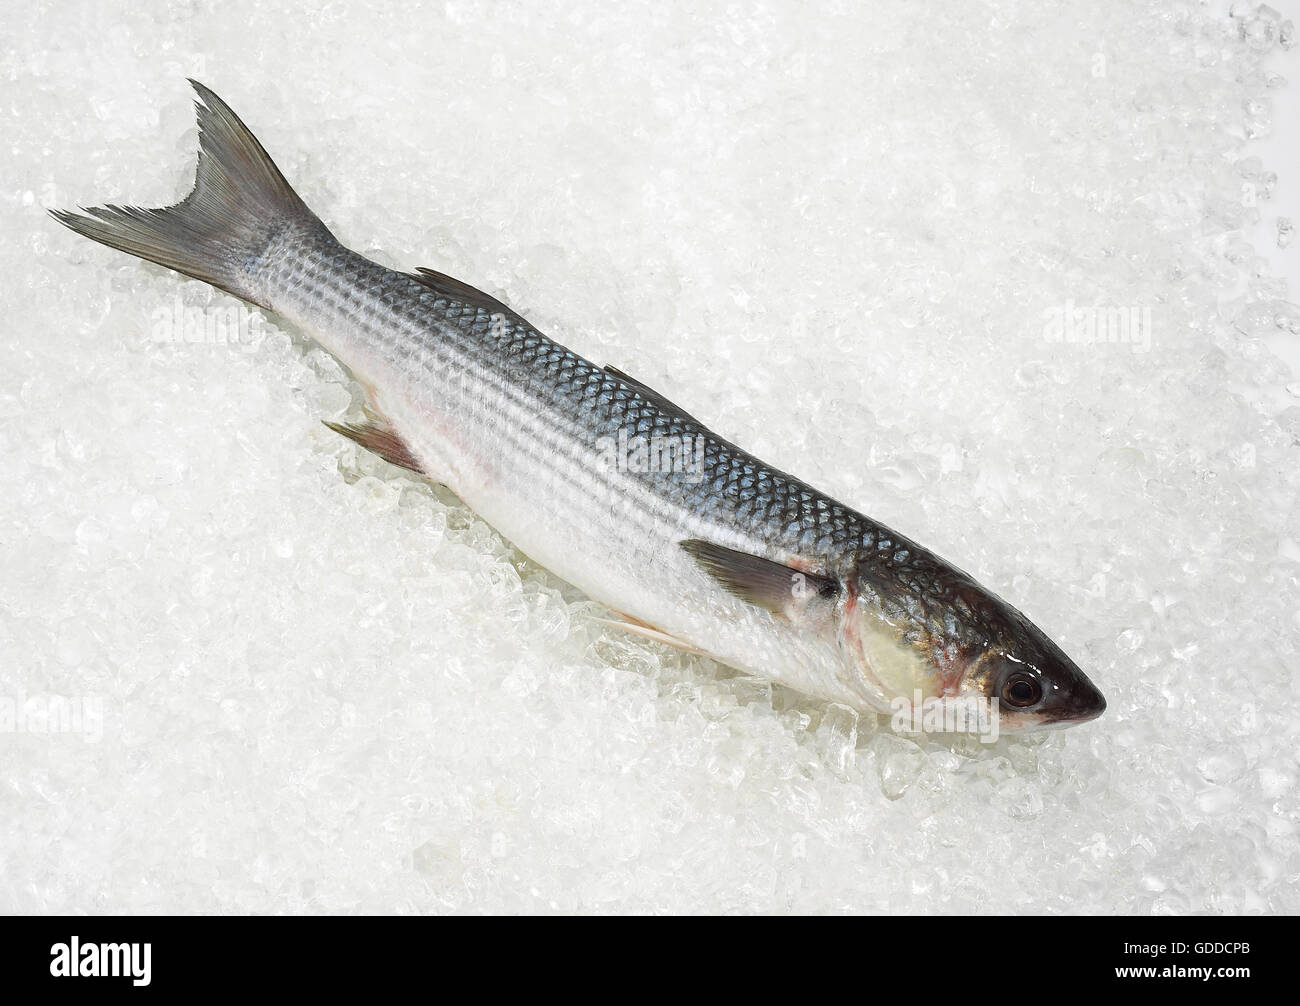 Cefalo, chelon labrosus, pesce fresco su ghiaccio Foto Stock